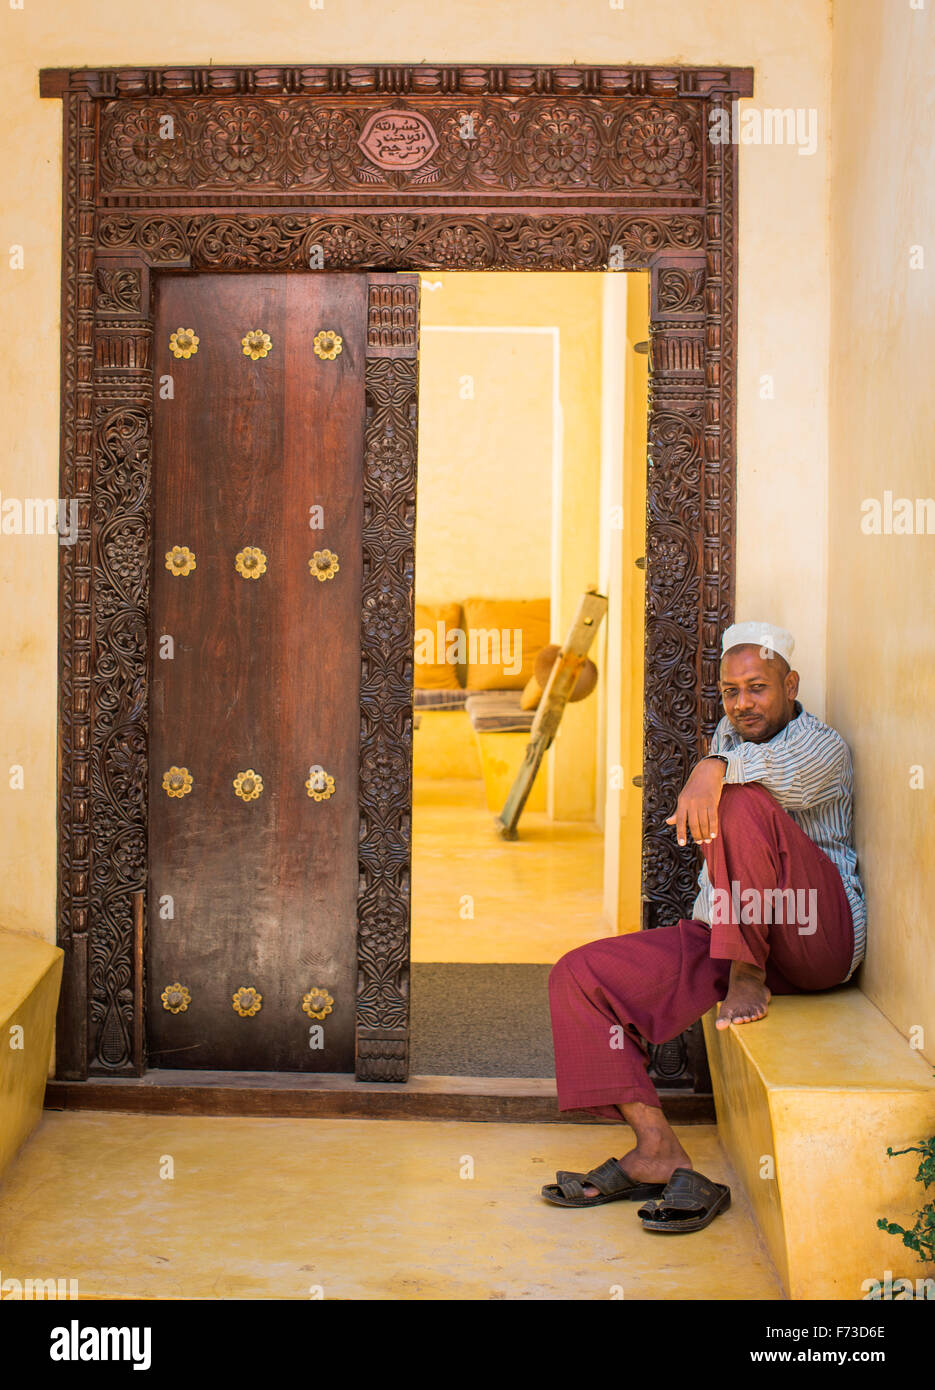 LAMU, Kenya, Afrique. Un homme en robe arabe traditionnelle se trouve sur un becnh à l'extérieur une ancienne porte en bois sculpté. Banque D'Images